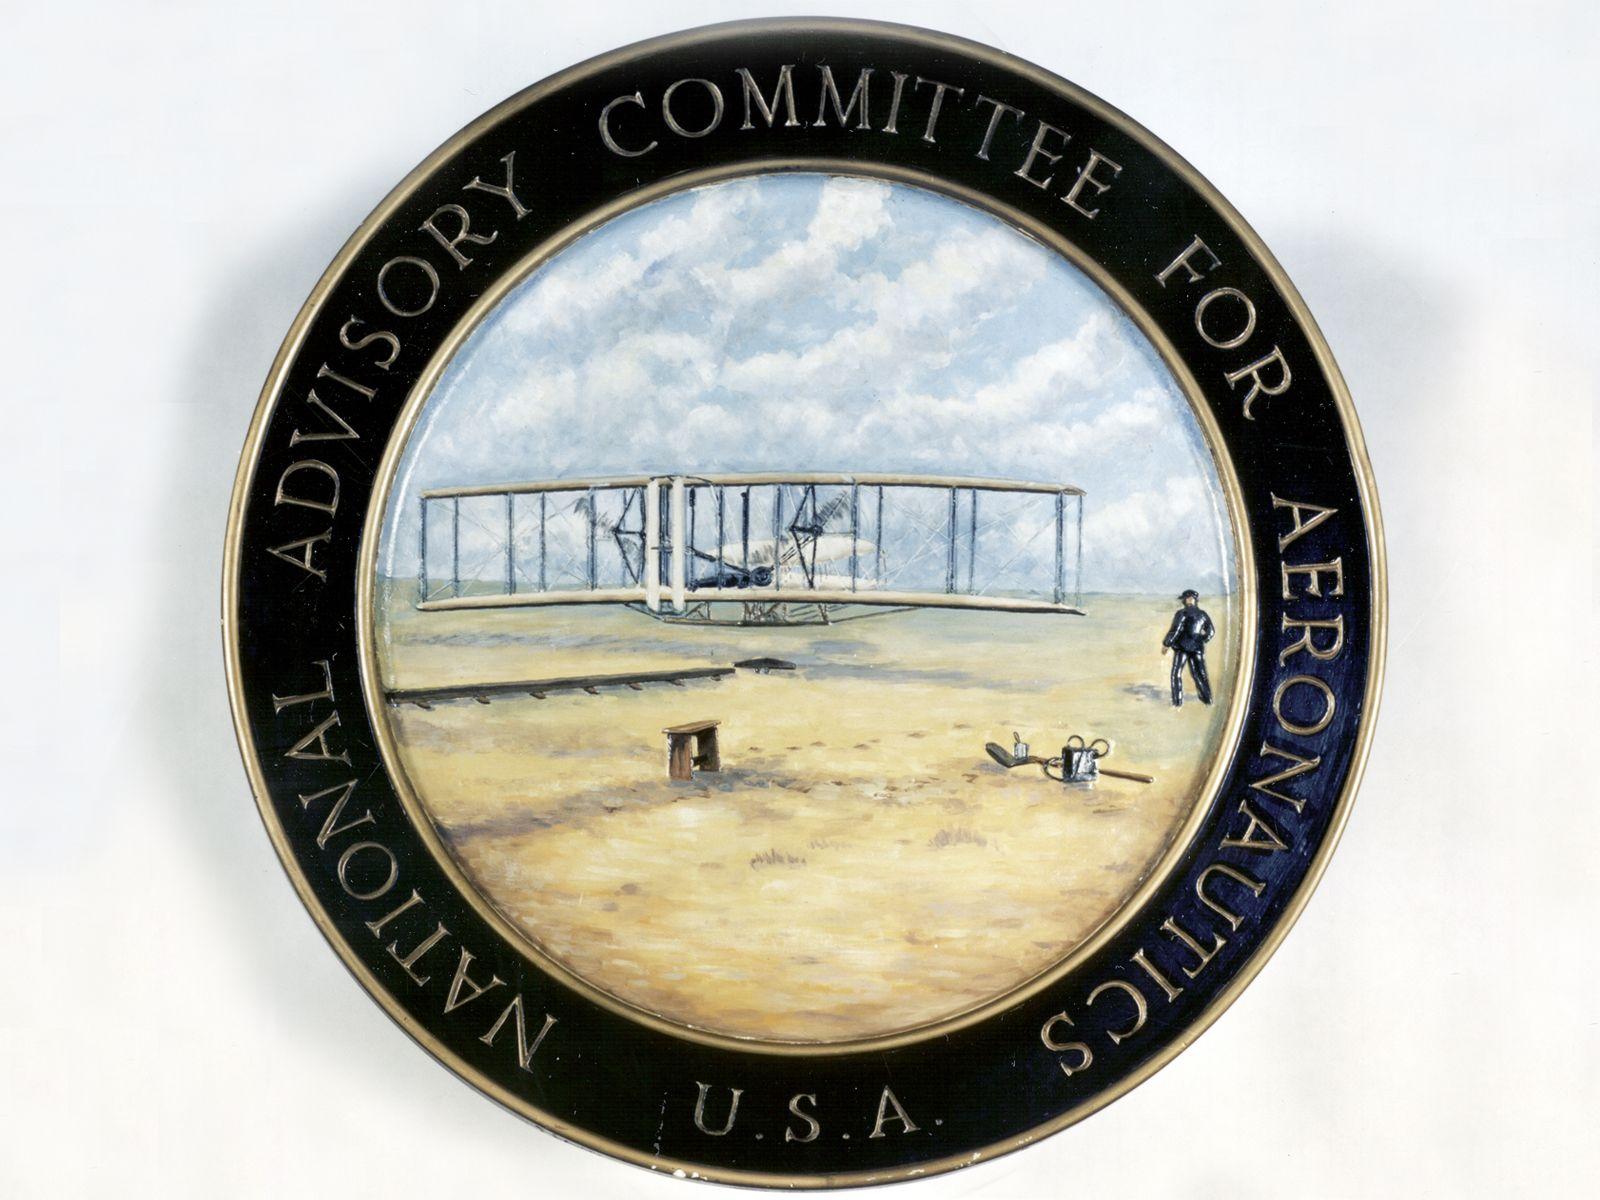 NACA NASA Logo - From the NACA to NASA: 95 Years of Innovation in Flight